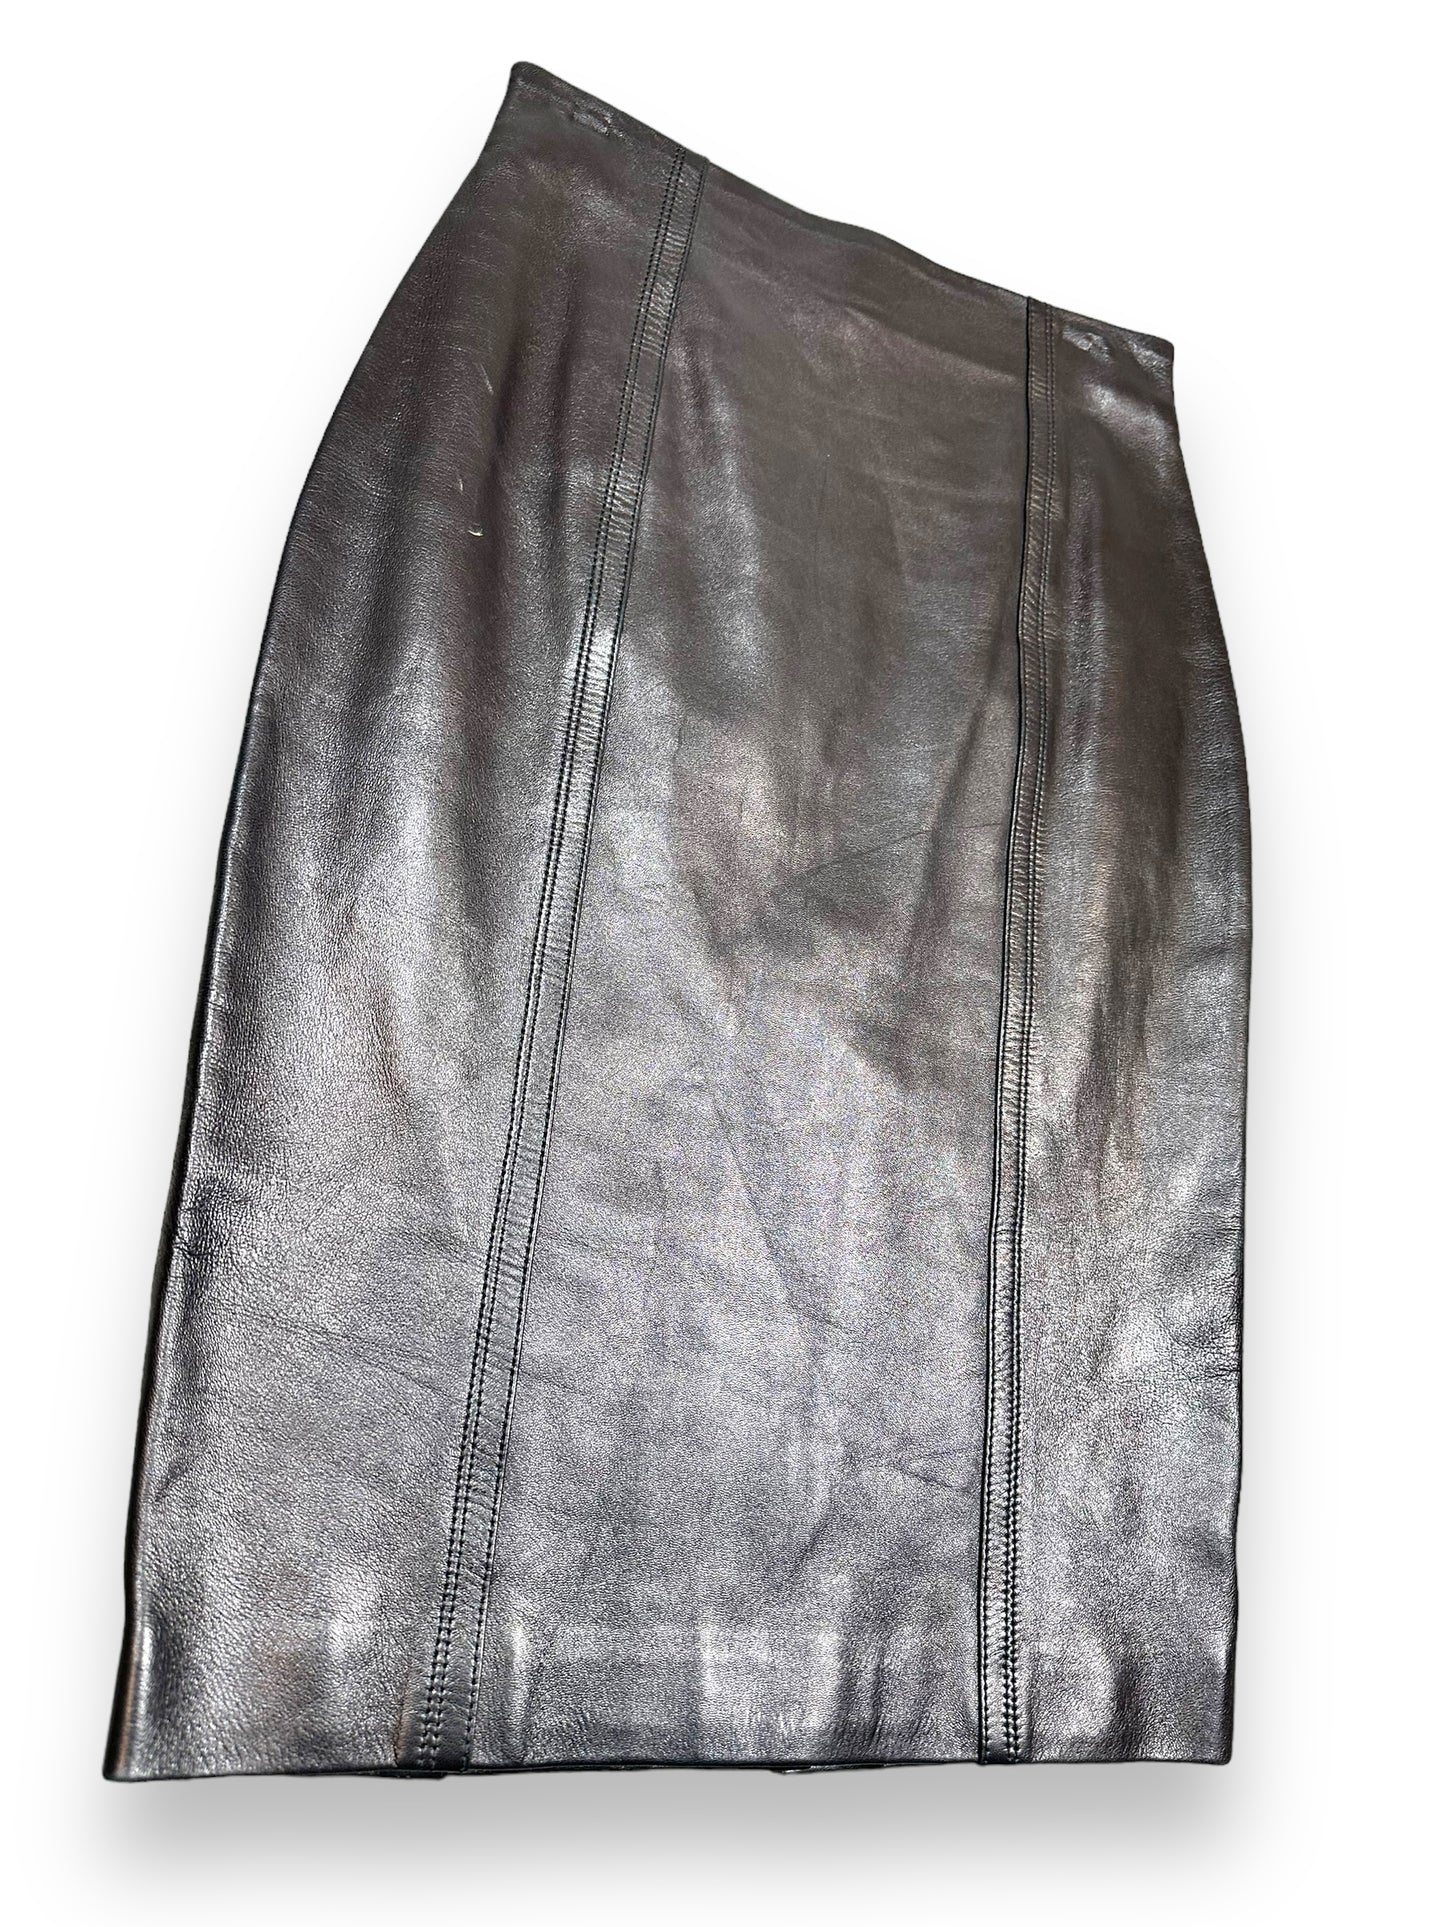 2007 Yves St Laurent Leather Skirt